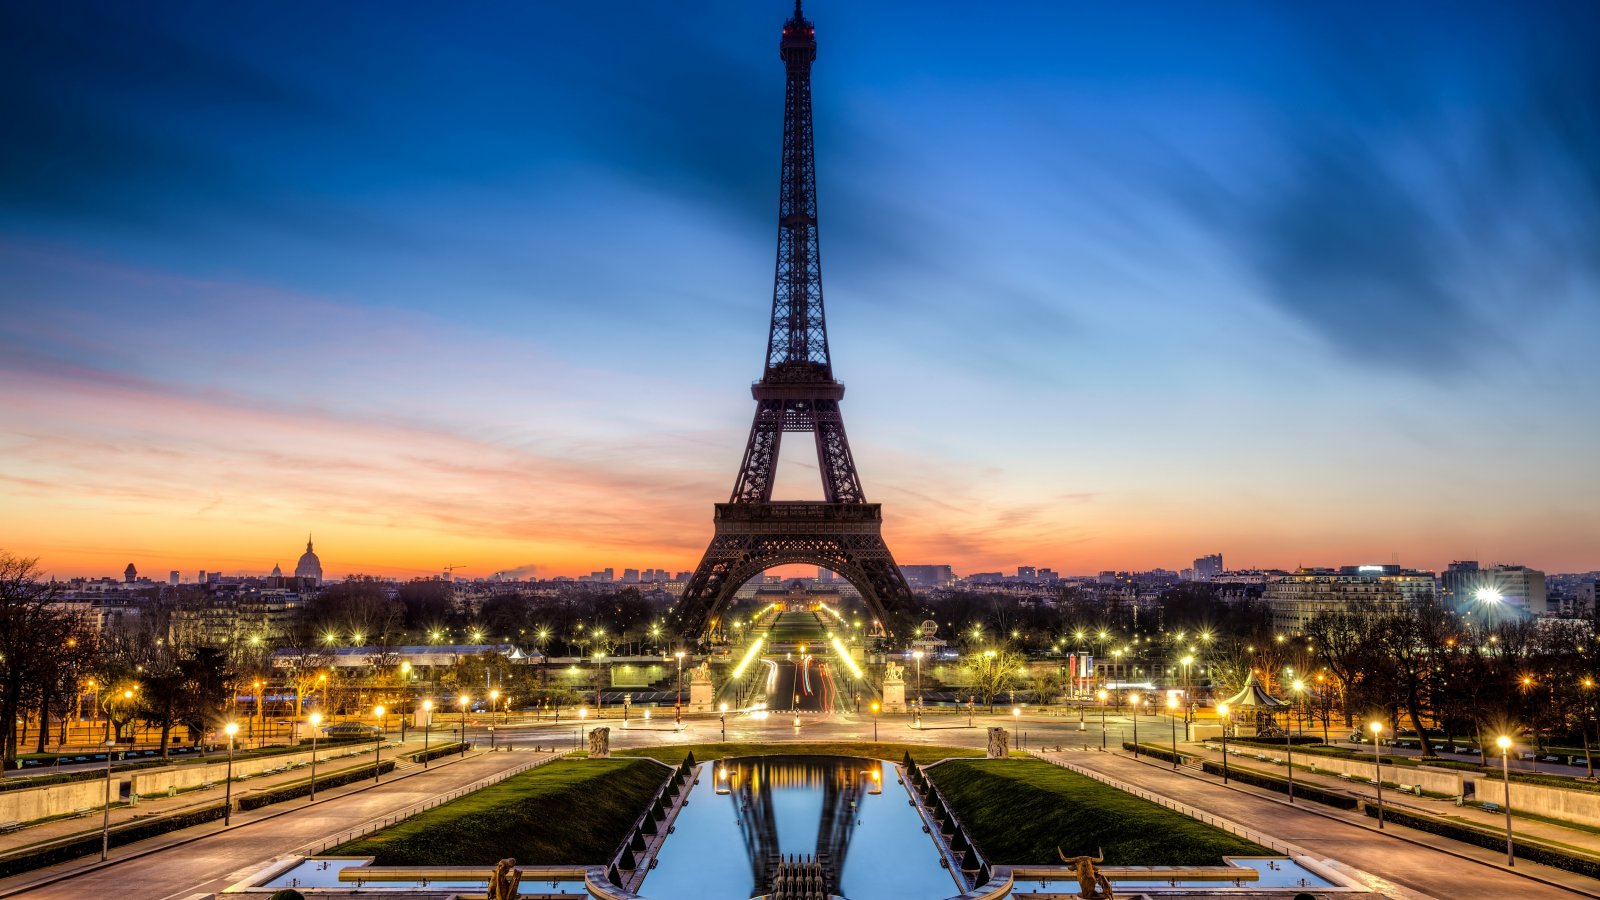 франция, вечер, paris, france, эйфелева башня, париж, la tour eiffel